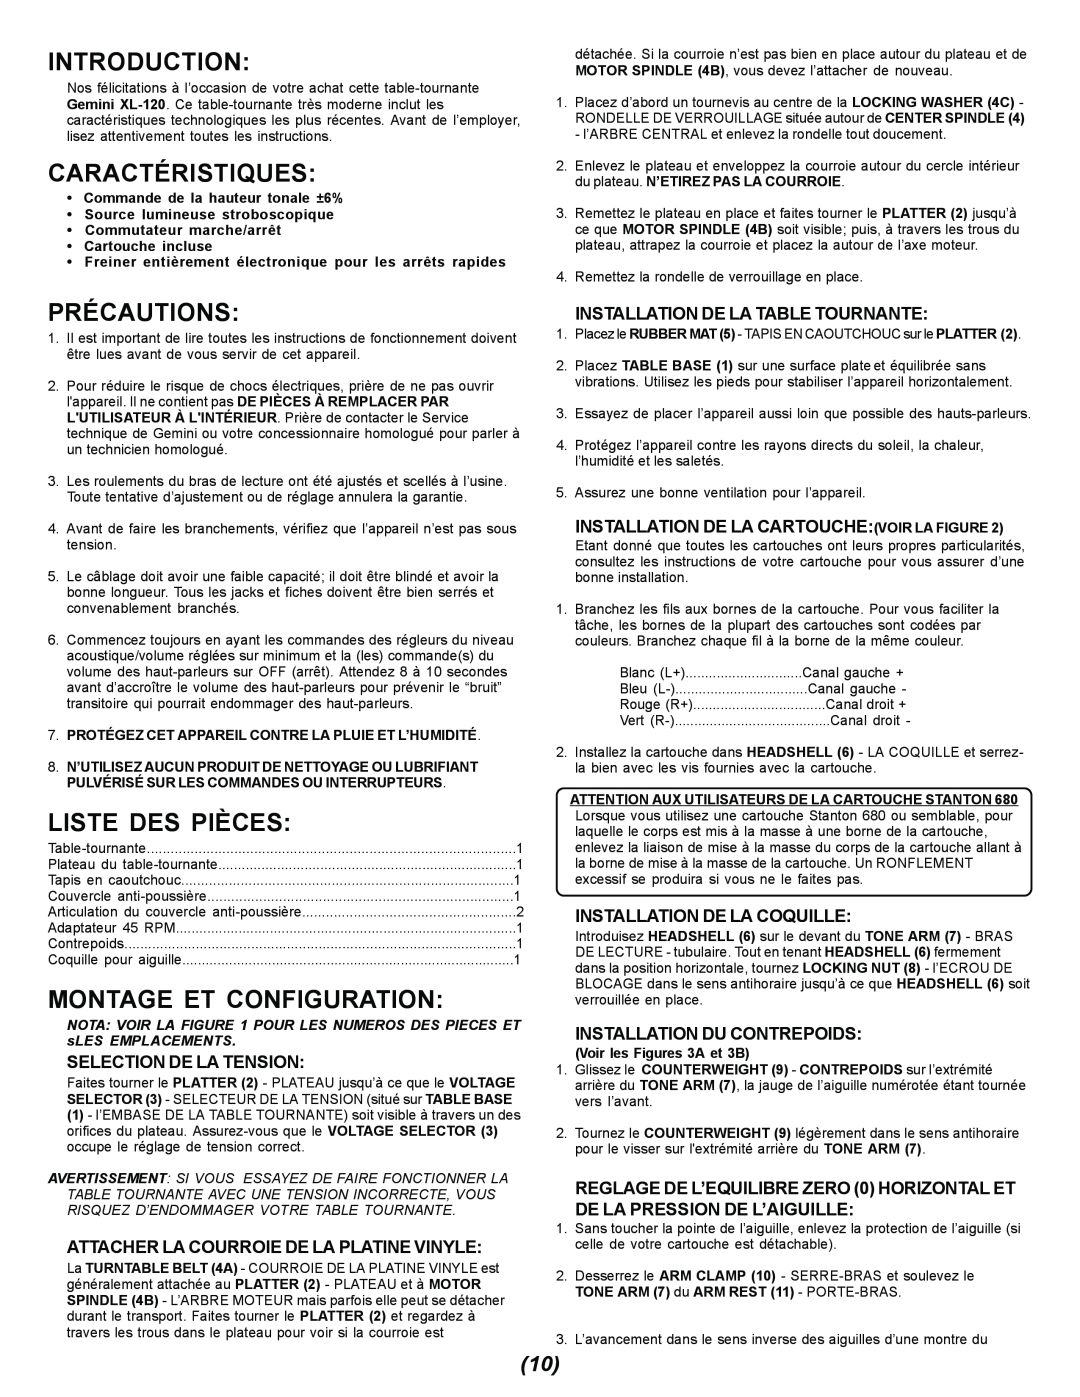 Gemini XL-120 manual Caractéristiques, Précautions, Liste Des Pièces, Montage Et Configuration, Selection De La Tension 